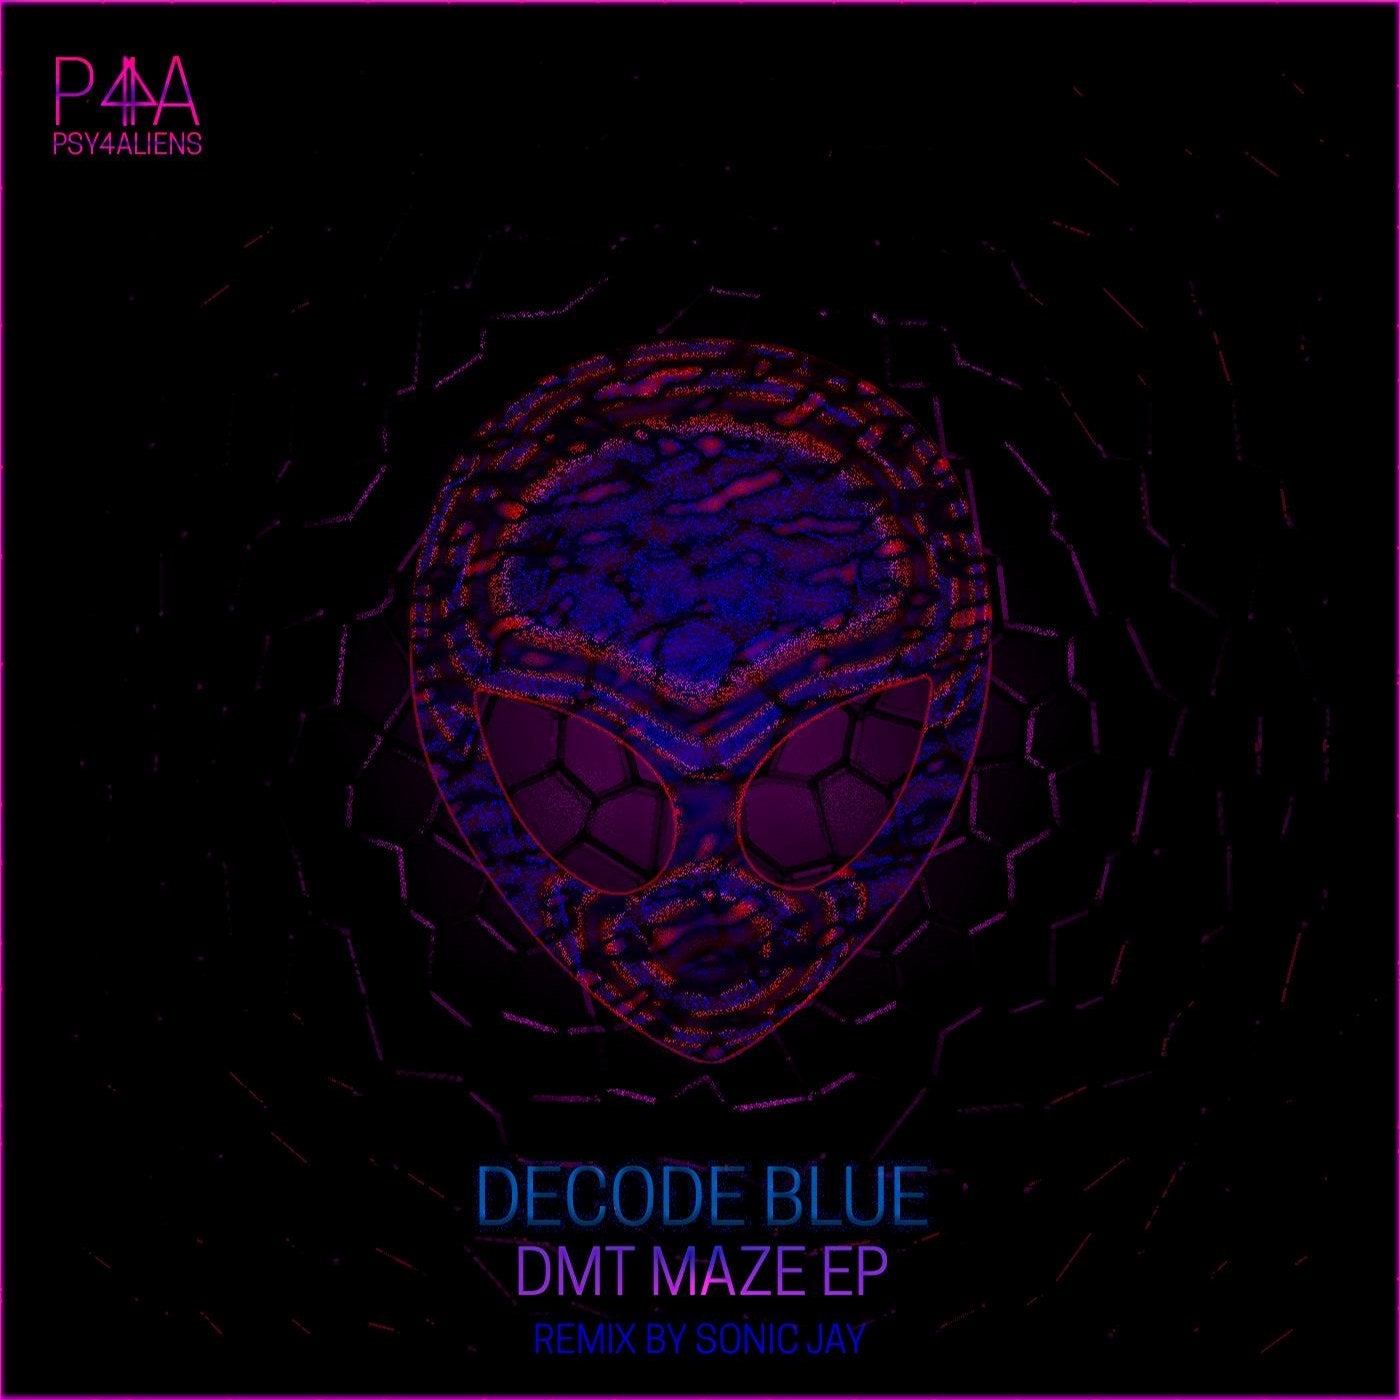 DMT Maze EP